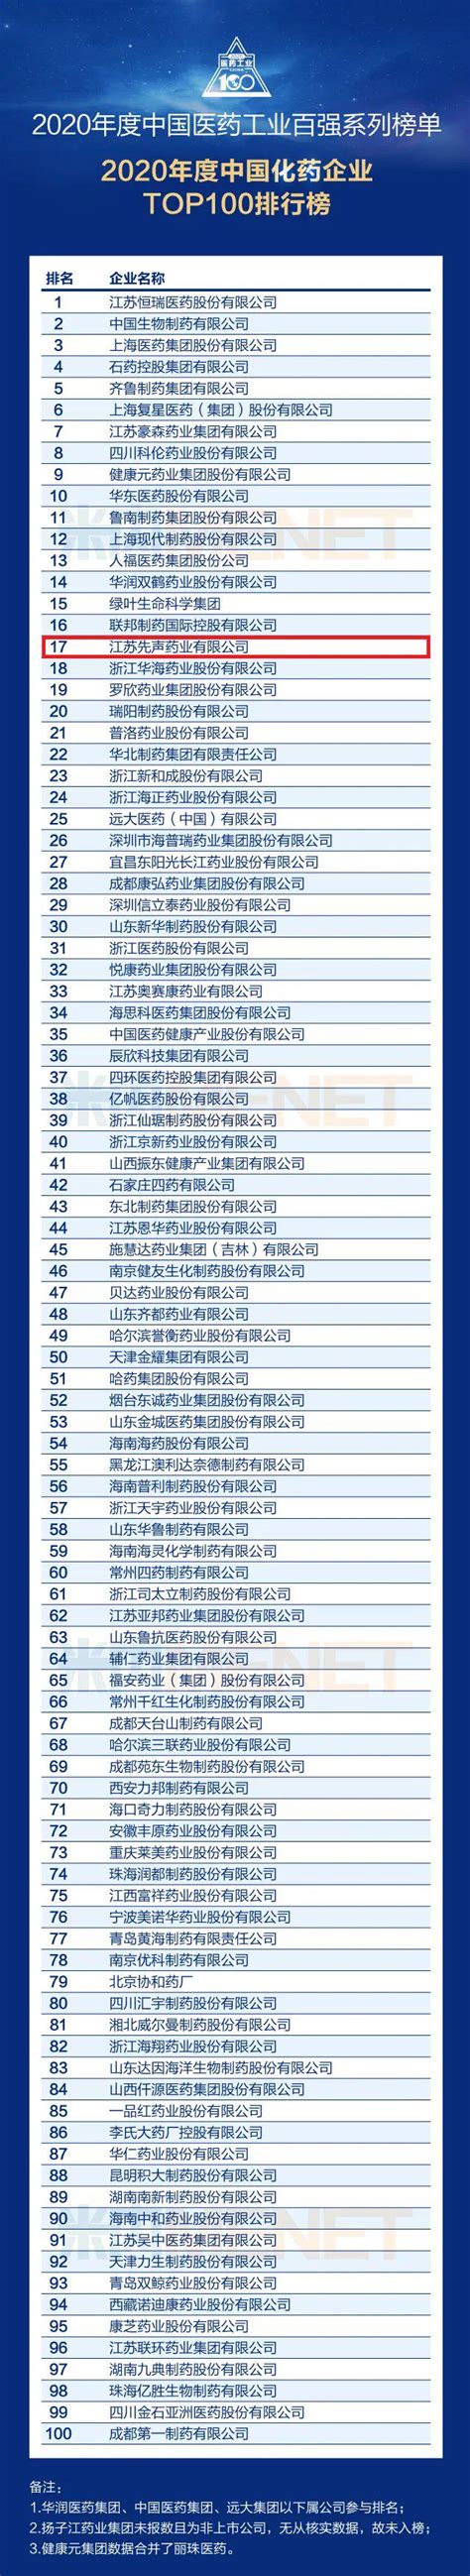 2019年全球制药企业TOP 50榜单公布：辉瑞稳居第一 中国2家药企首次上榜【组图】_行业研究报告 - 前瞻网